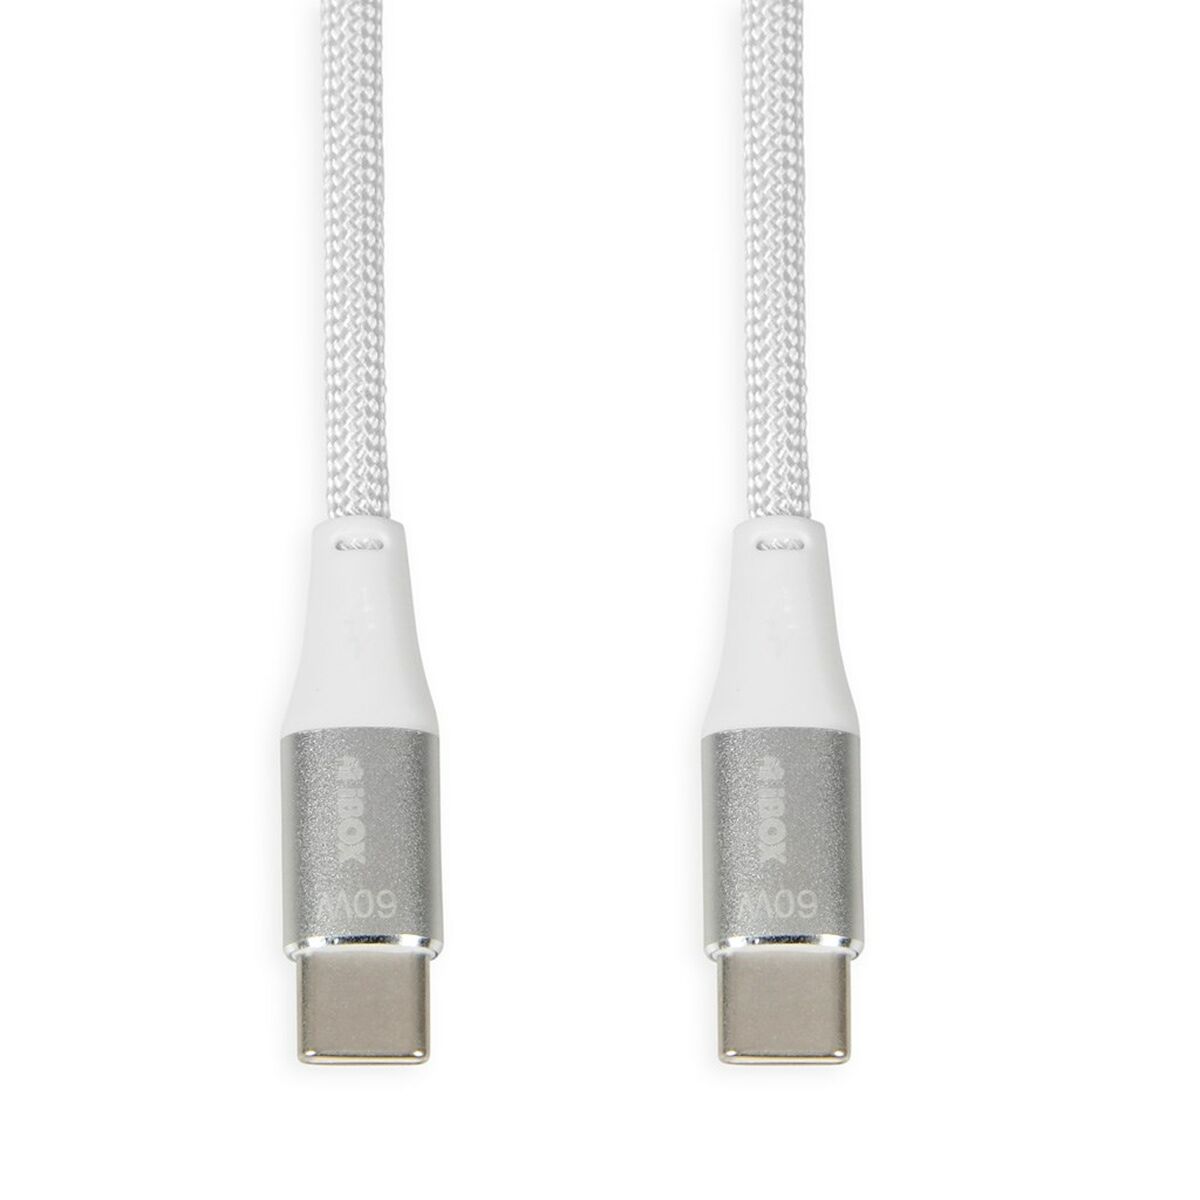 Osta tuote Kaapeli USB C Ibox IKUTC1W Valkoinen 1 m verkkokaupastamme Korhone: Urheilu & Vapaa-aika 10% alennuksella koodilla KORHONE